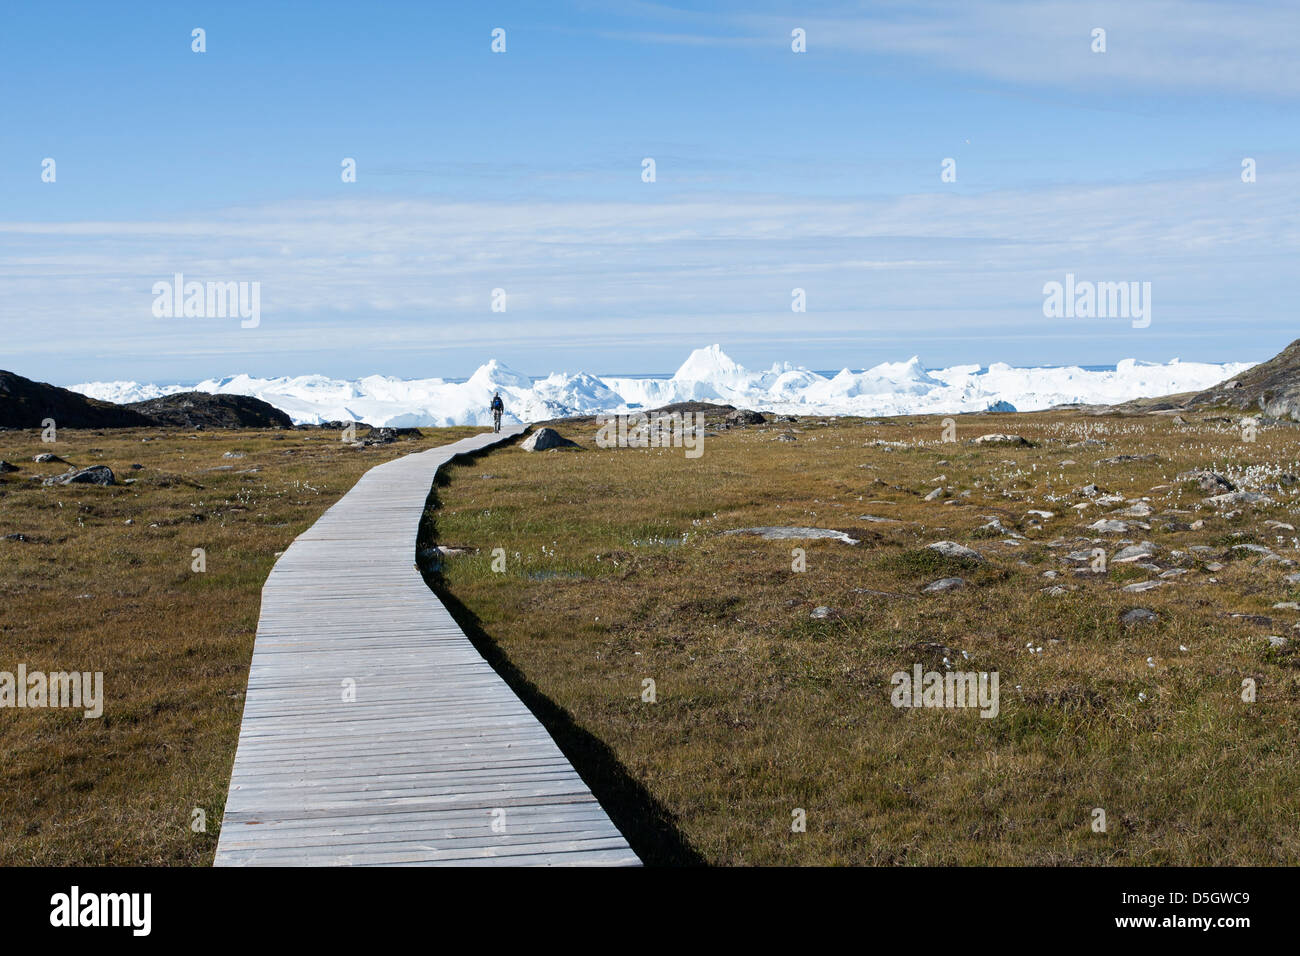 Wooden walkway to Ilulissat Icefjord, Ilulissat (Jakobshavn), Greenland Stock Photo